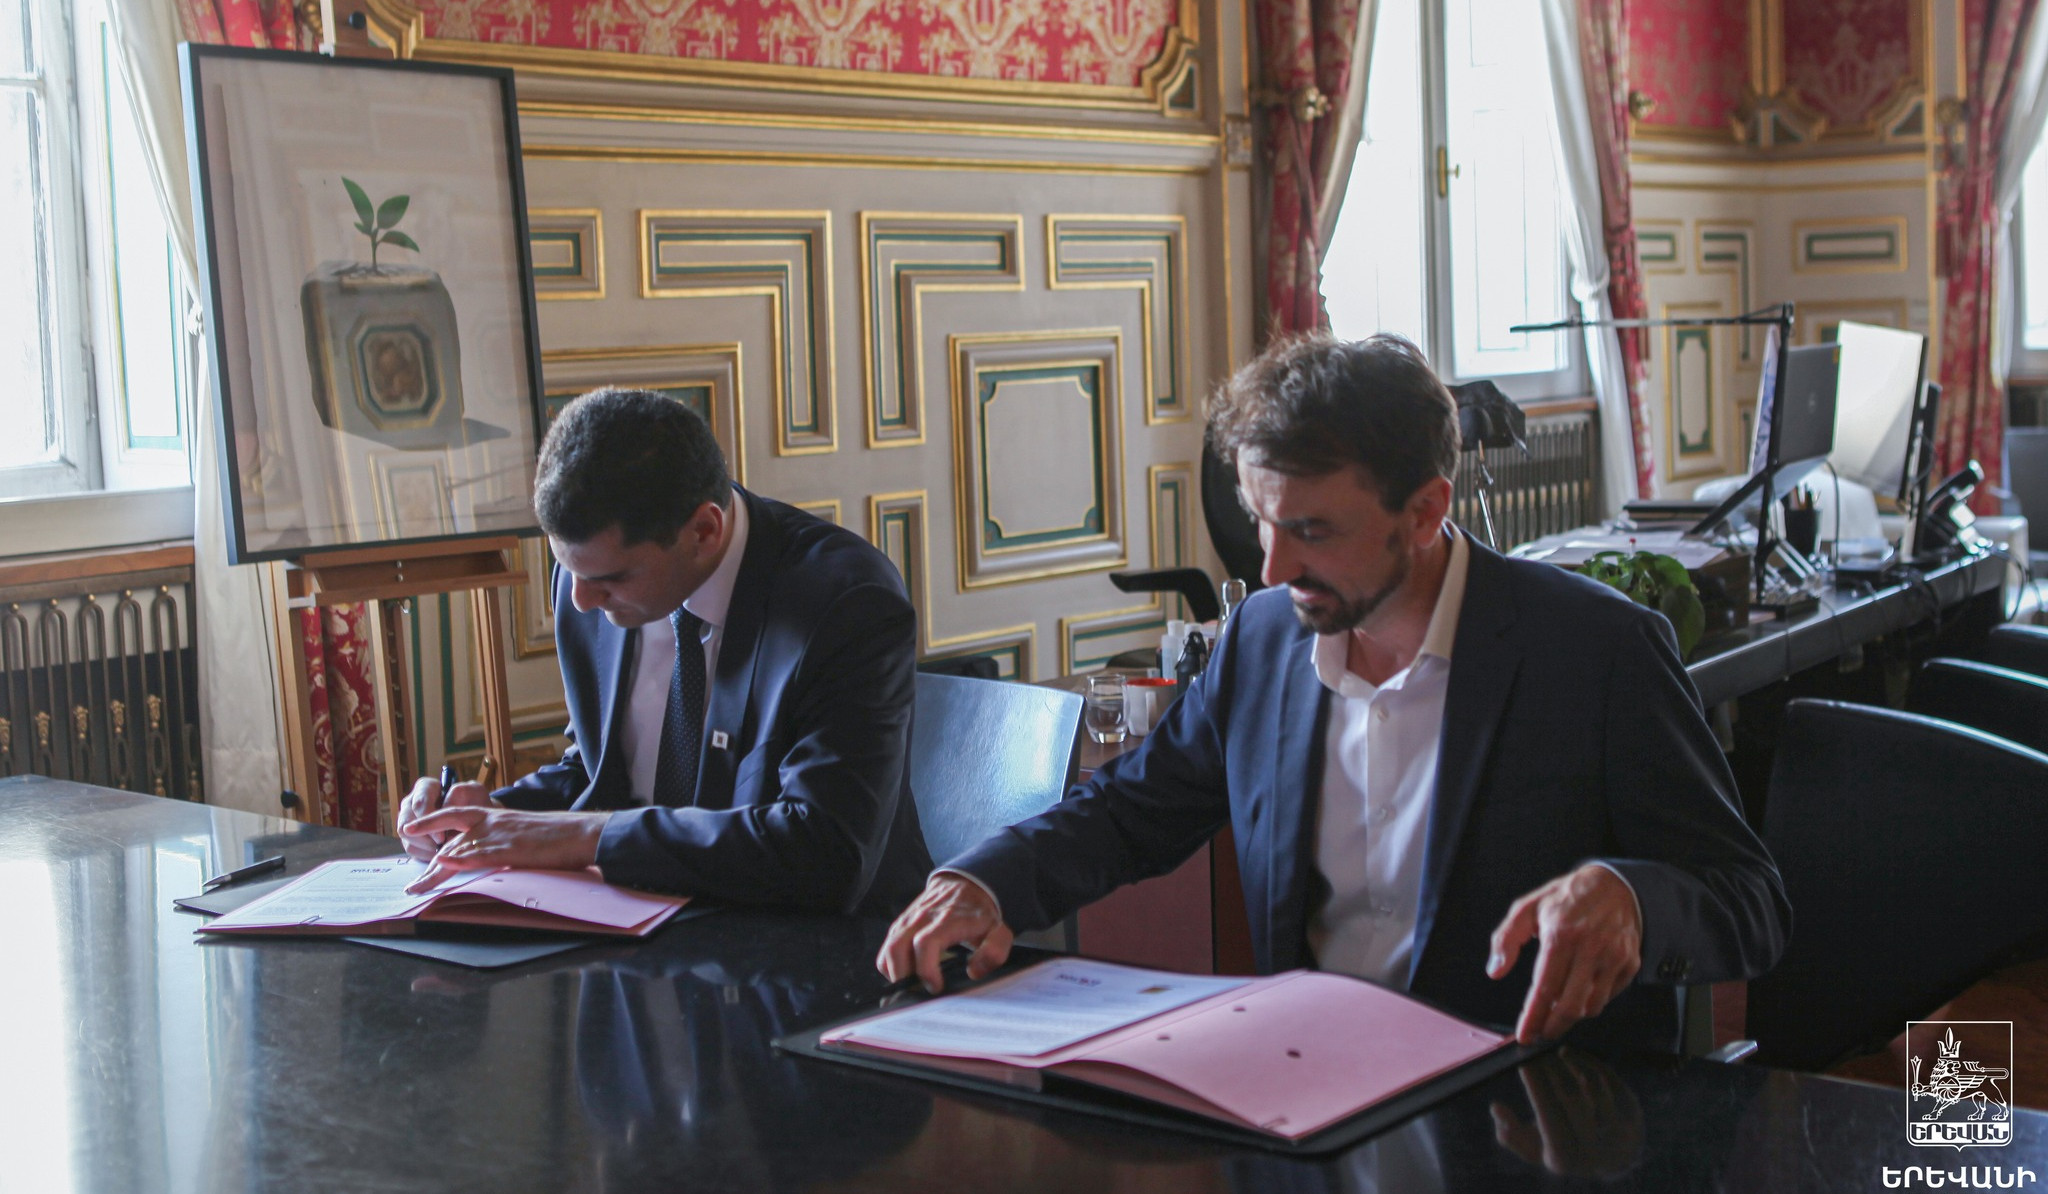 Memorandum of understanding signed between municipalities of Lyon